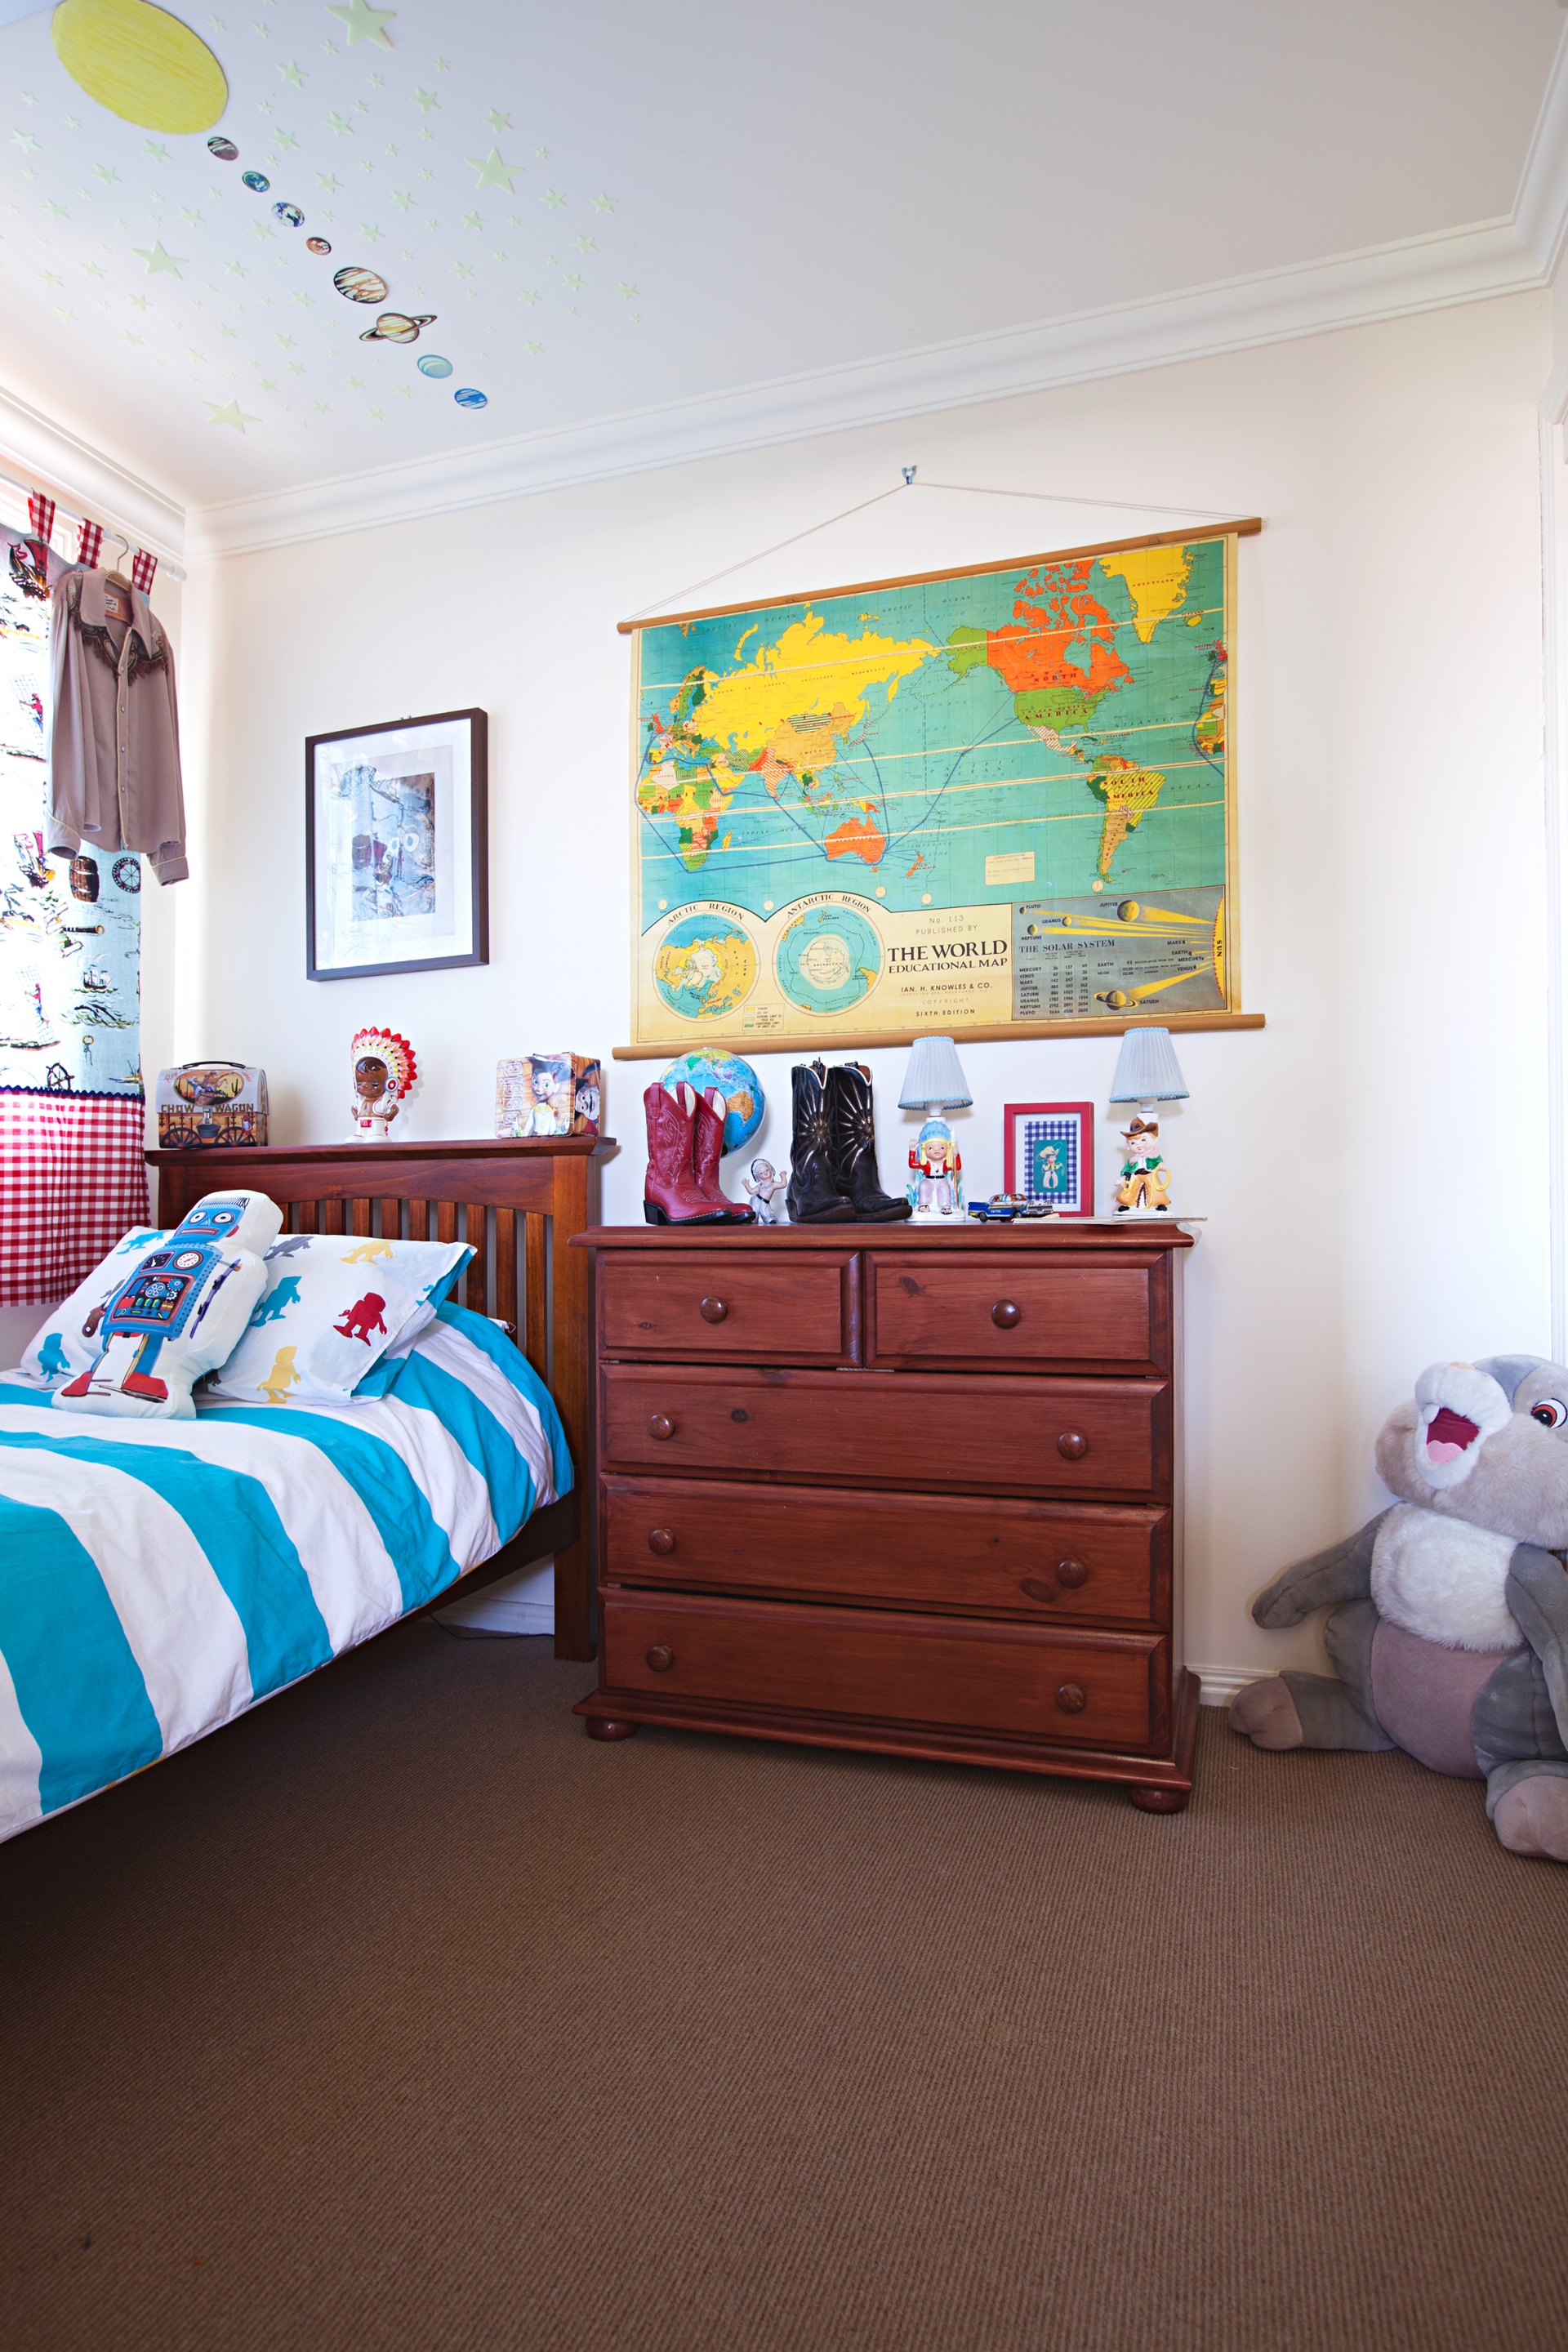 Phòng ngủ của cậu con trai có gam màu xanh dương mát mẻ với những hoạt tiết phù hợp với độ tuổi được in lên gối và chăn.